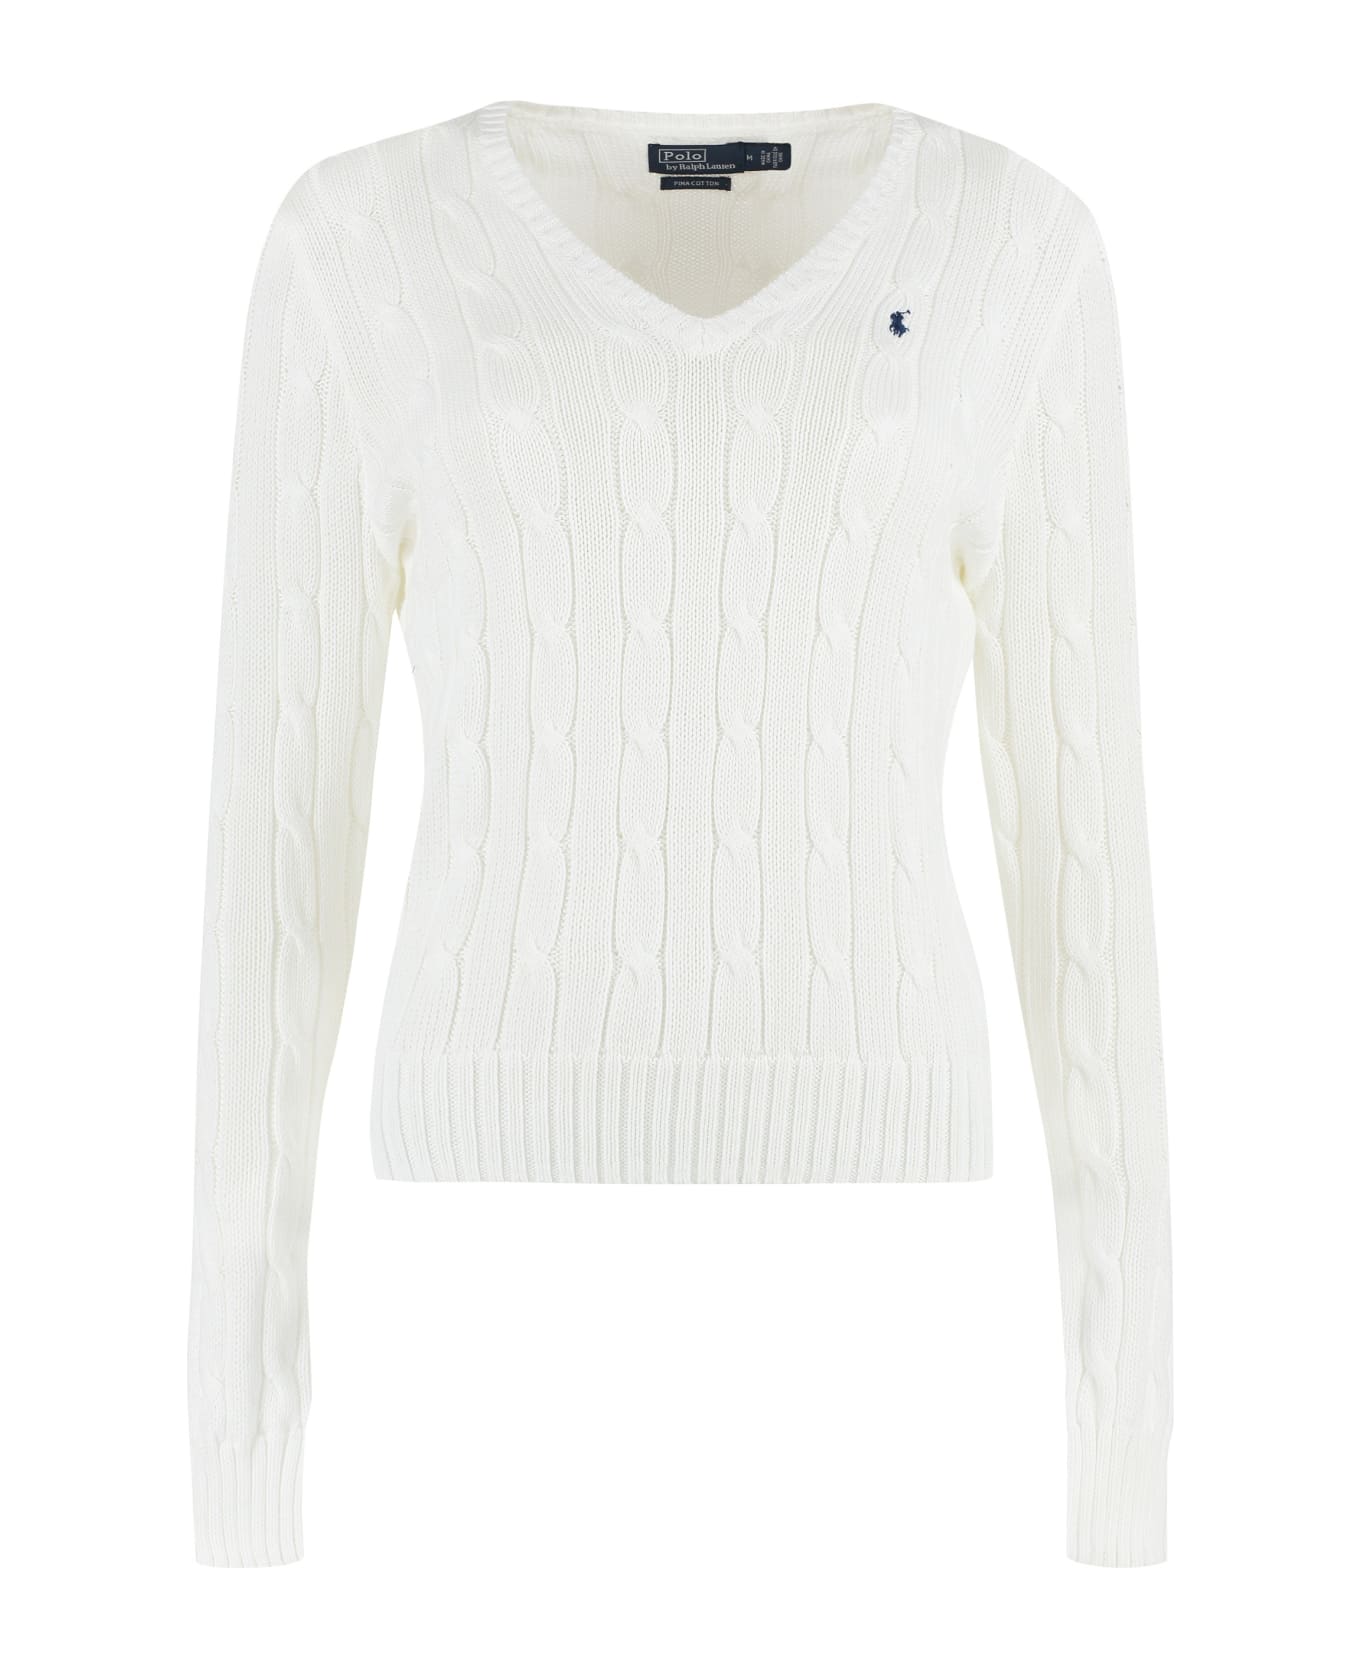 Ralph Lauren Cable Knit Sweater - White ニットウェア